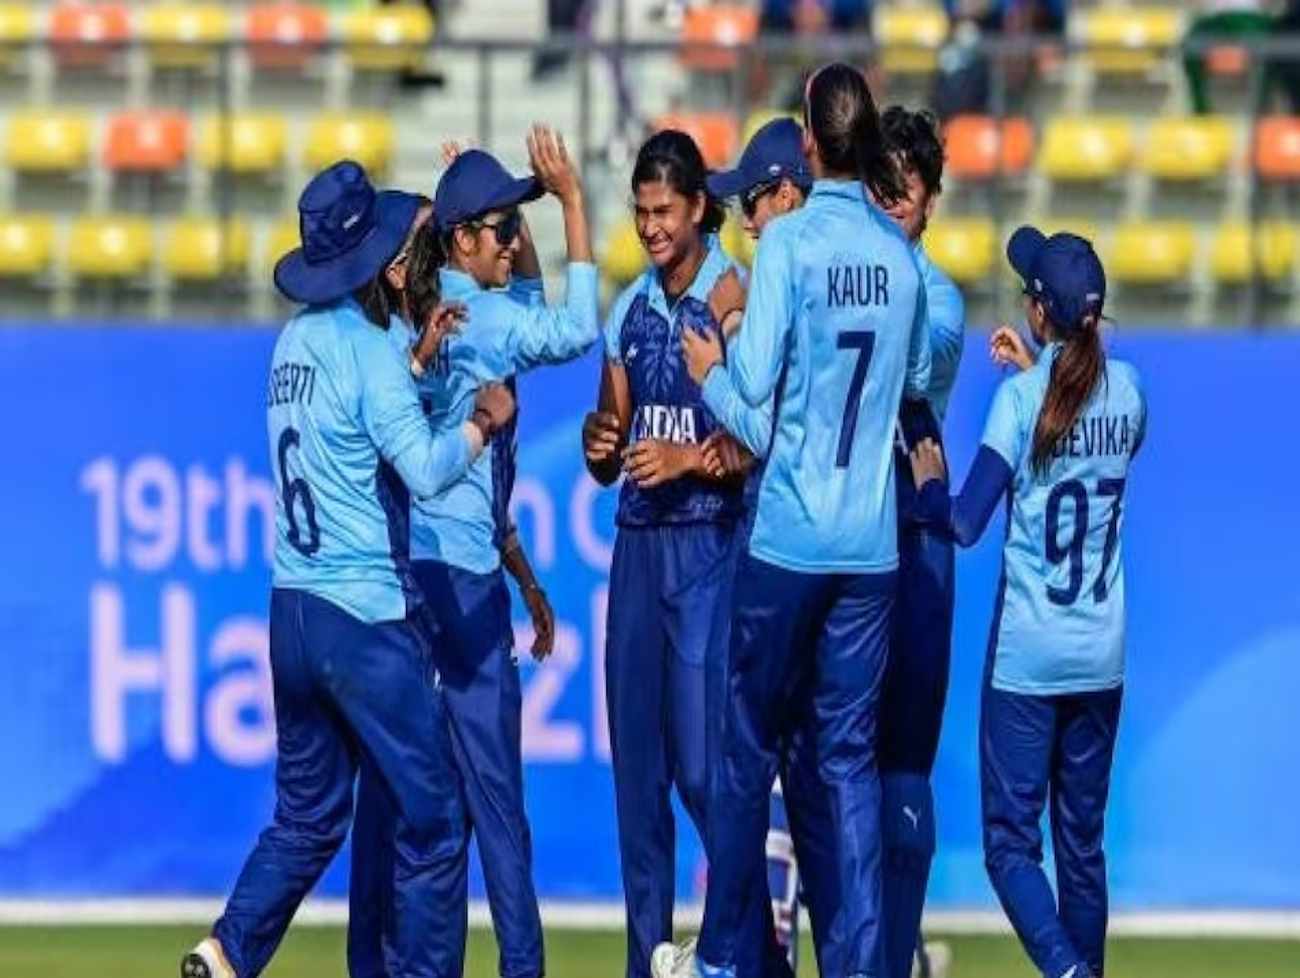 એશિયા કપમાં ભારતીય મહિલા ક્રિકેટની ઐતિહાસીક સિદ્ધી, શ્રીલંકાને 19 રનથી હરાવ્યું.